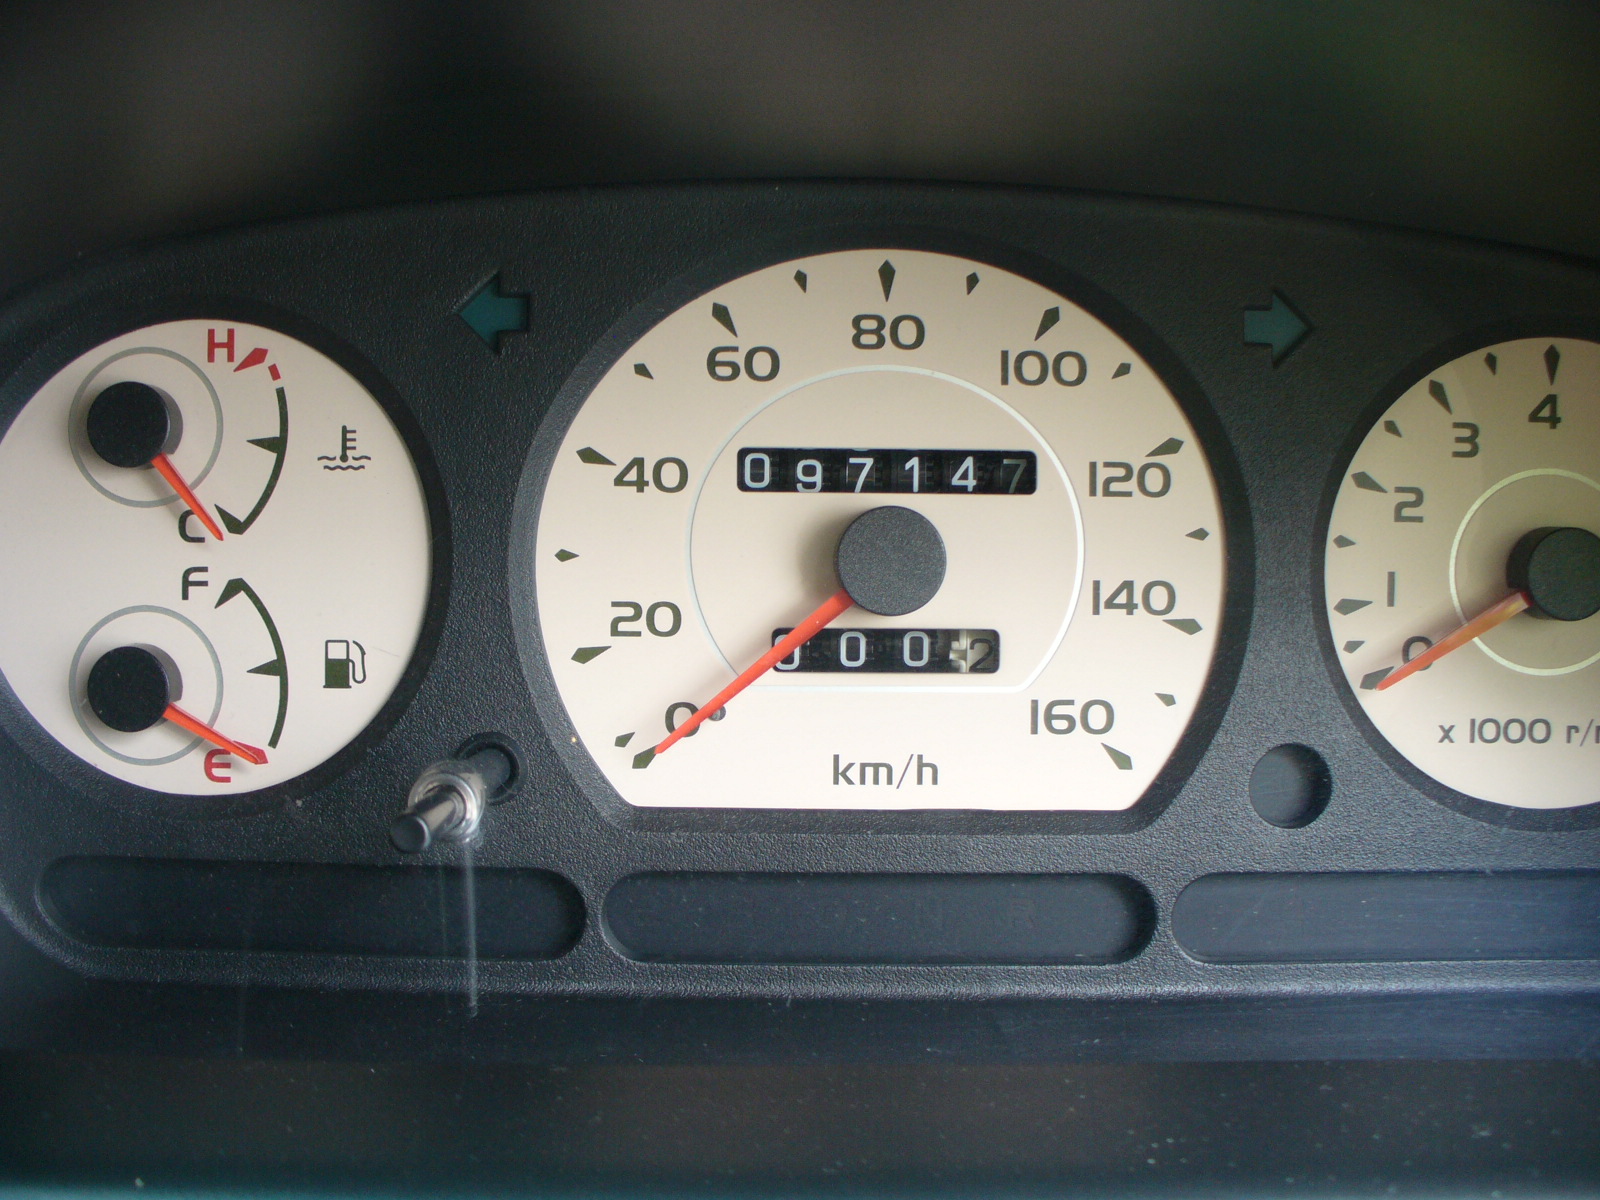 Stream Used Car: Perodua Kenari EZ 1.0 Auto 2003 DAQ